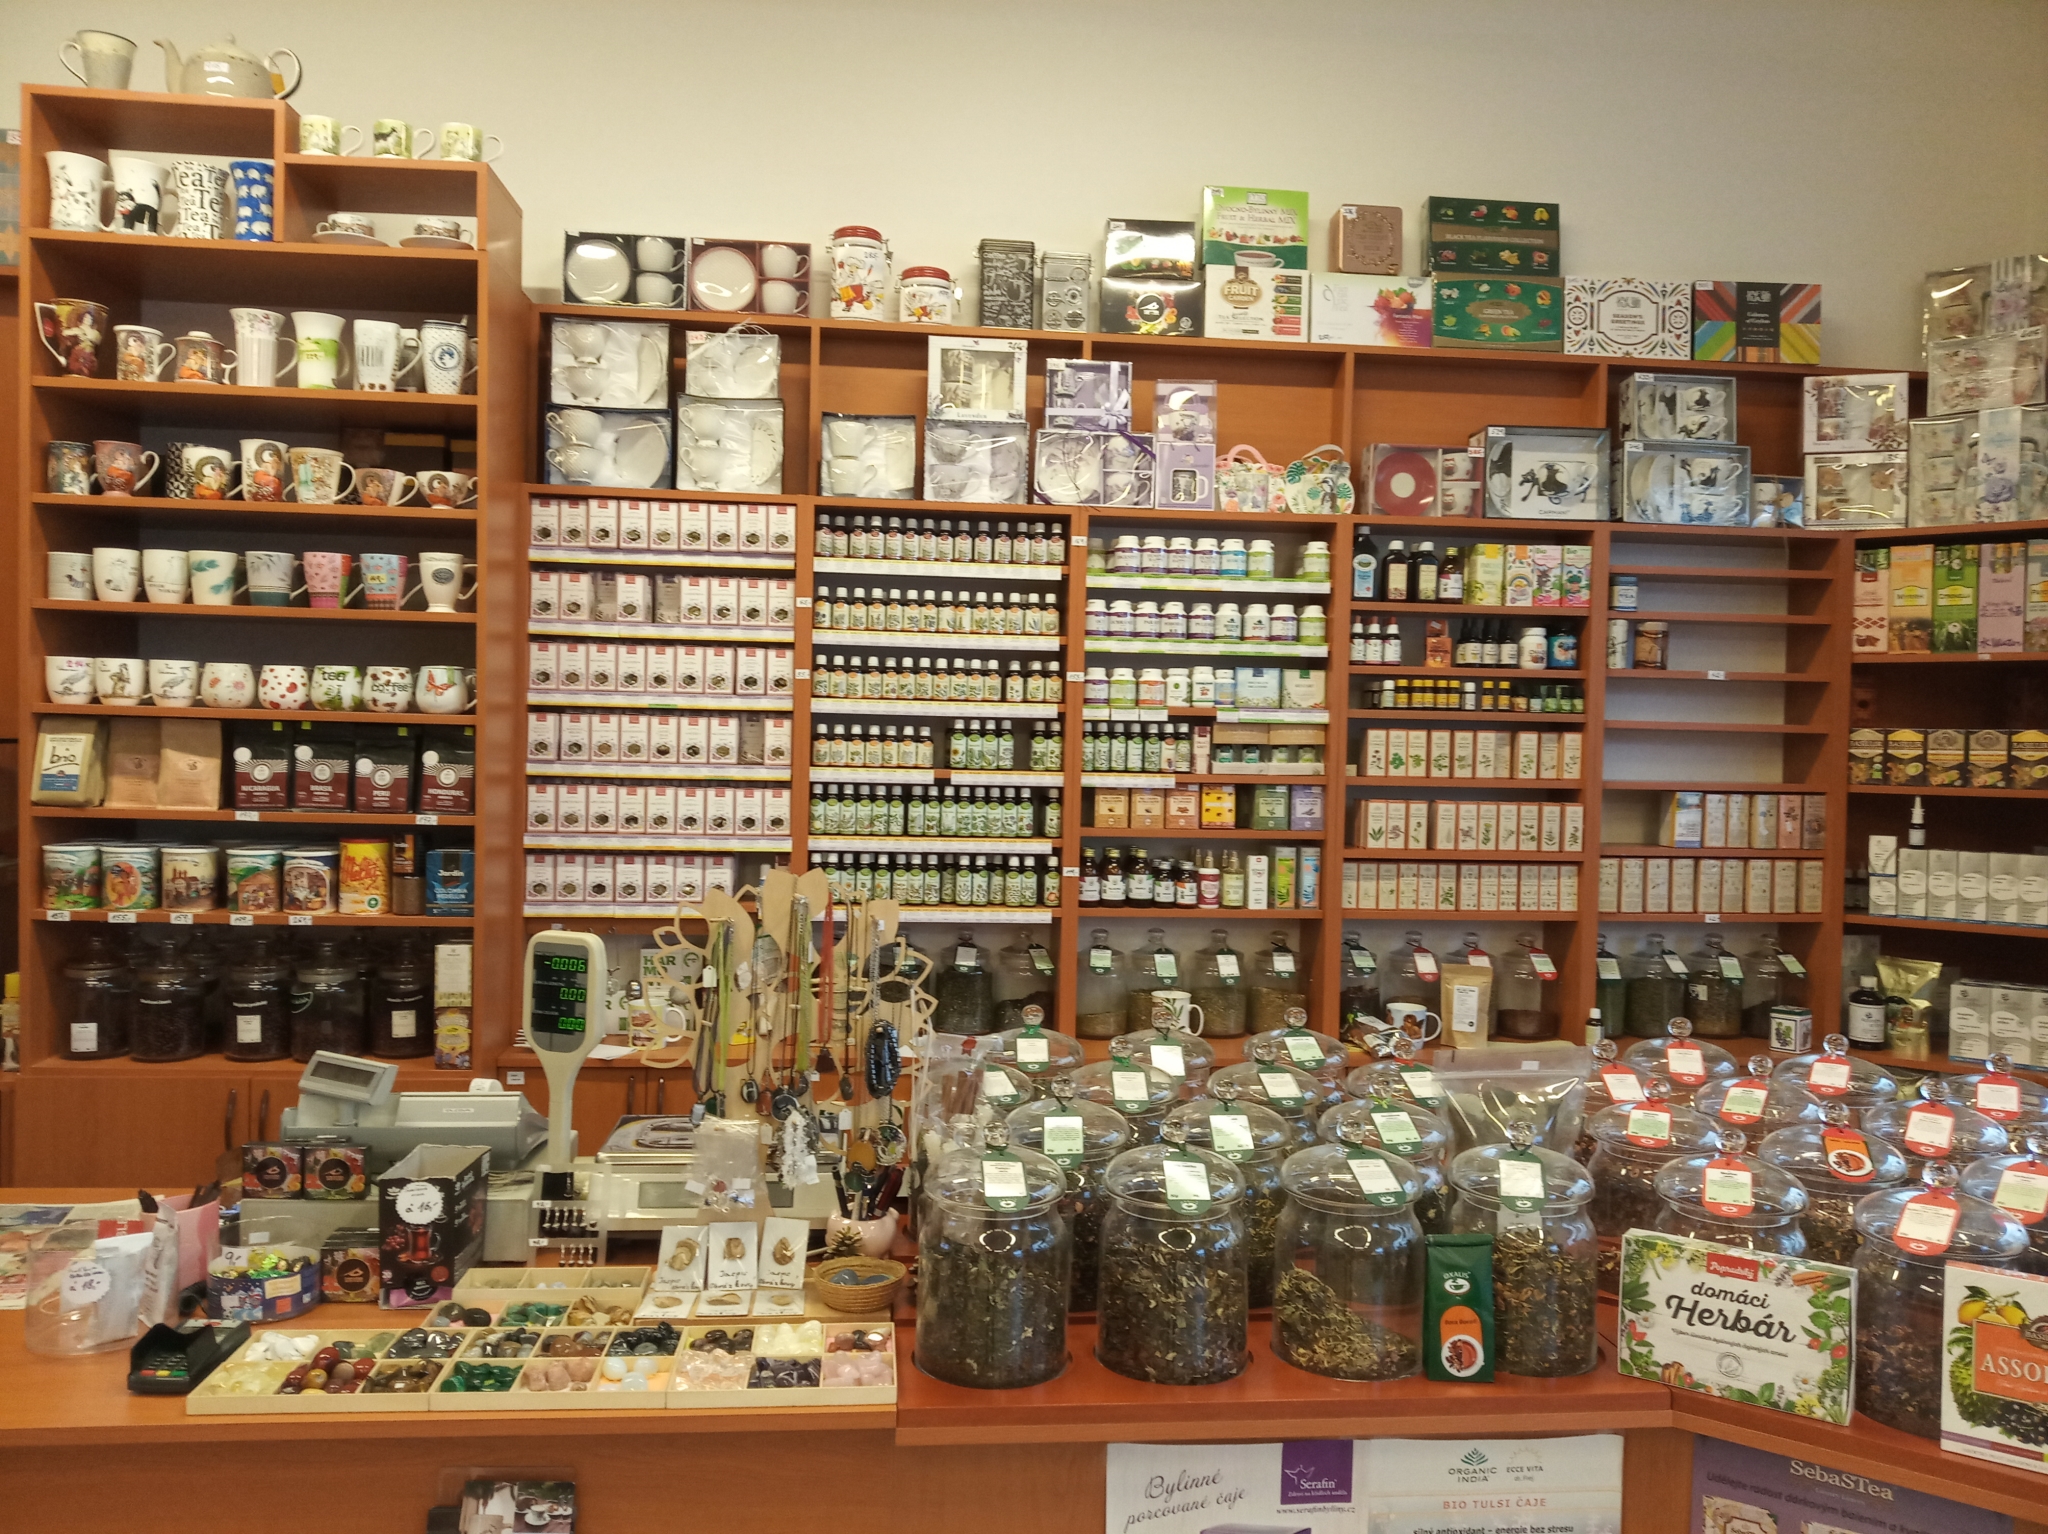  Boston - čaje, káva, bylinky | Serafin byliny